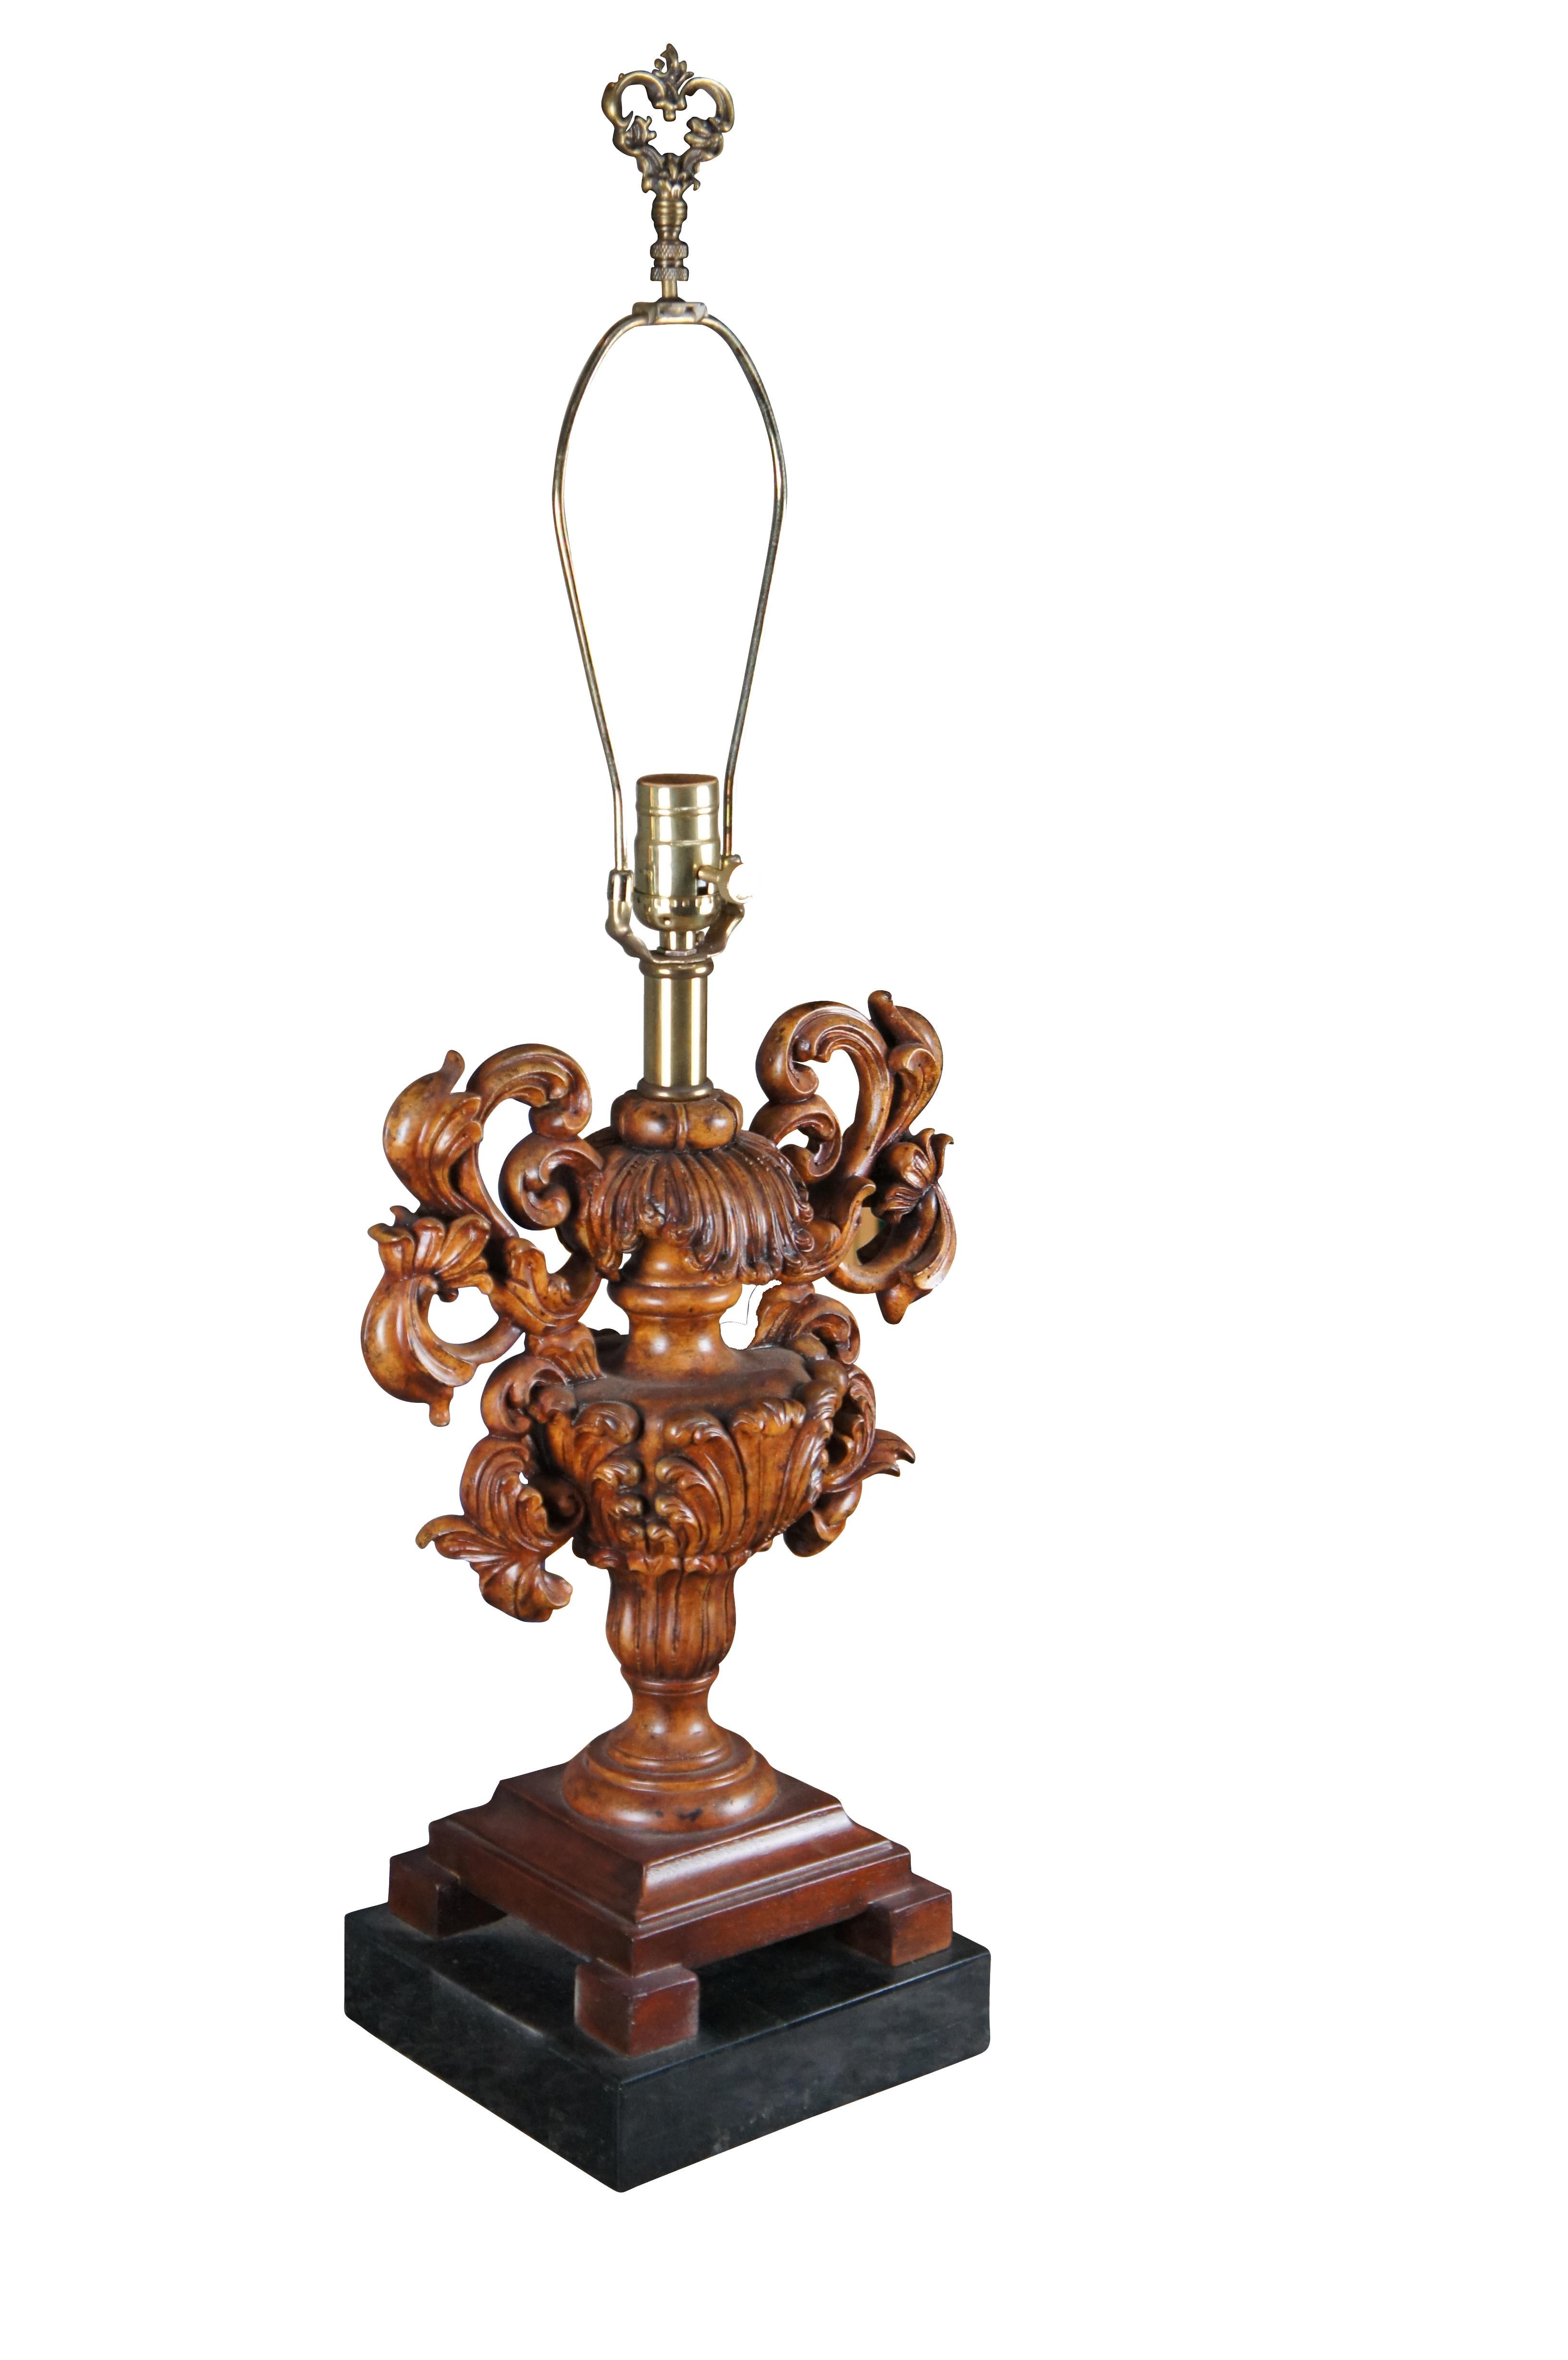 Italienische barocke Tisch- oder Buffetlampe von Maitland Smith aus dem späten 20. Jahrhundert. Mit einer geschnitzten Mahagoni-Urne mit Akanthus-Ranken über einem mosaikartigen Marmorsockel. Halterung aus Messing mit länglicher Harfe und